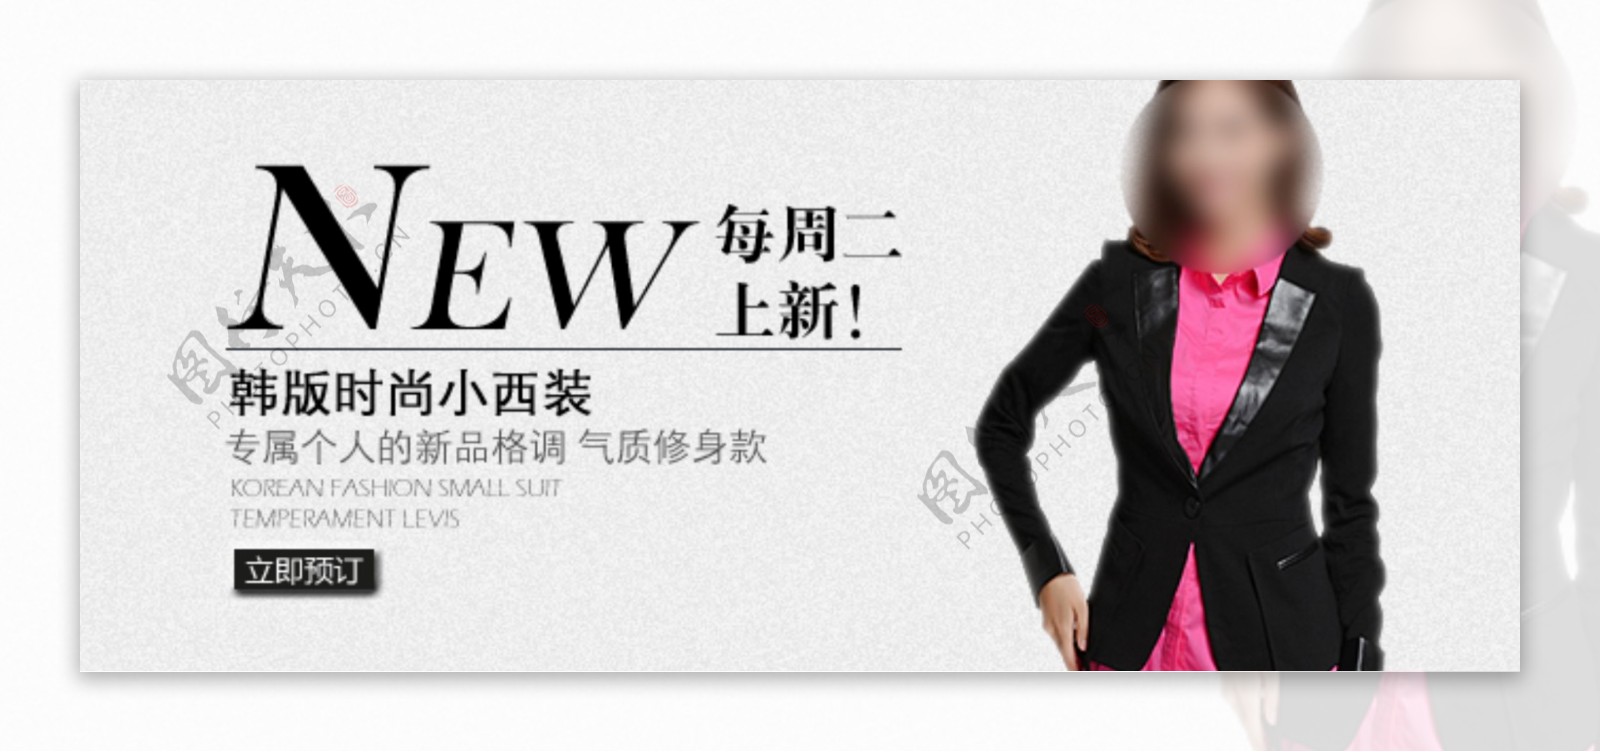 韩版时尚小西装淘宝女装海报素材下载